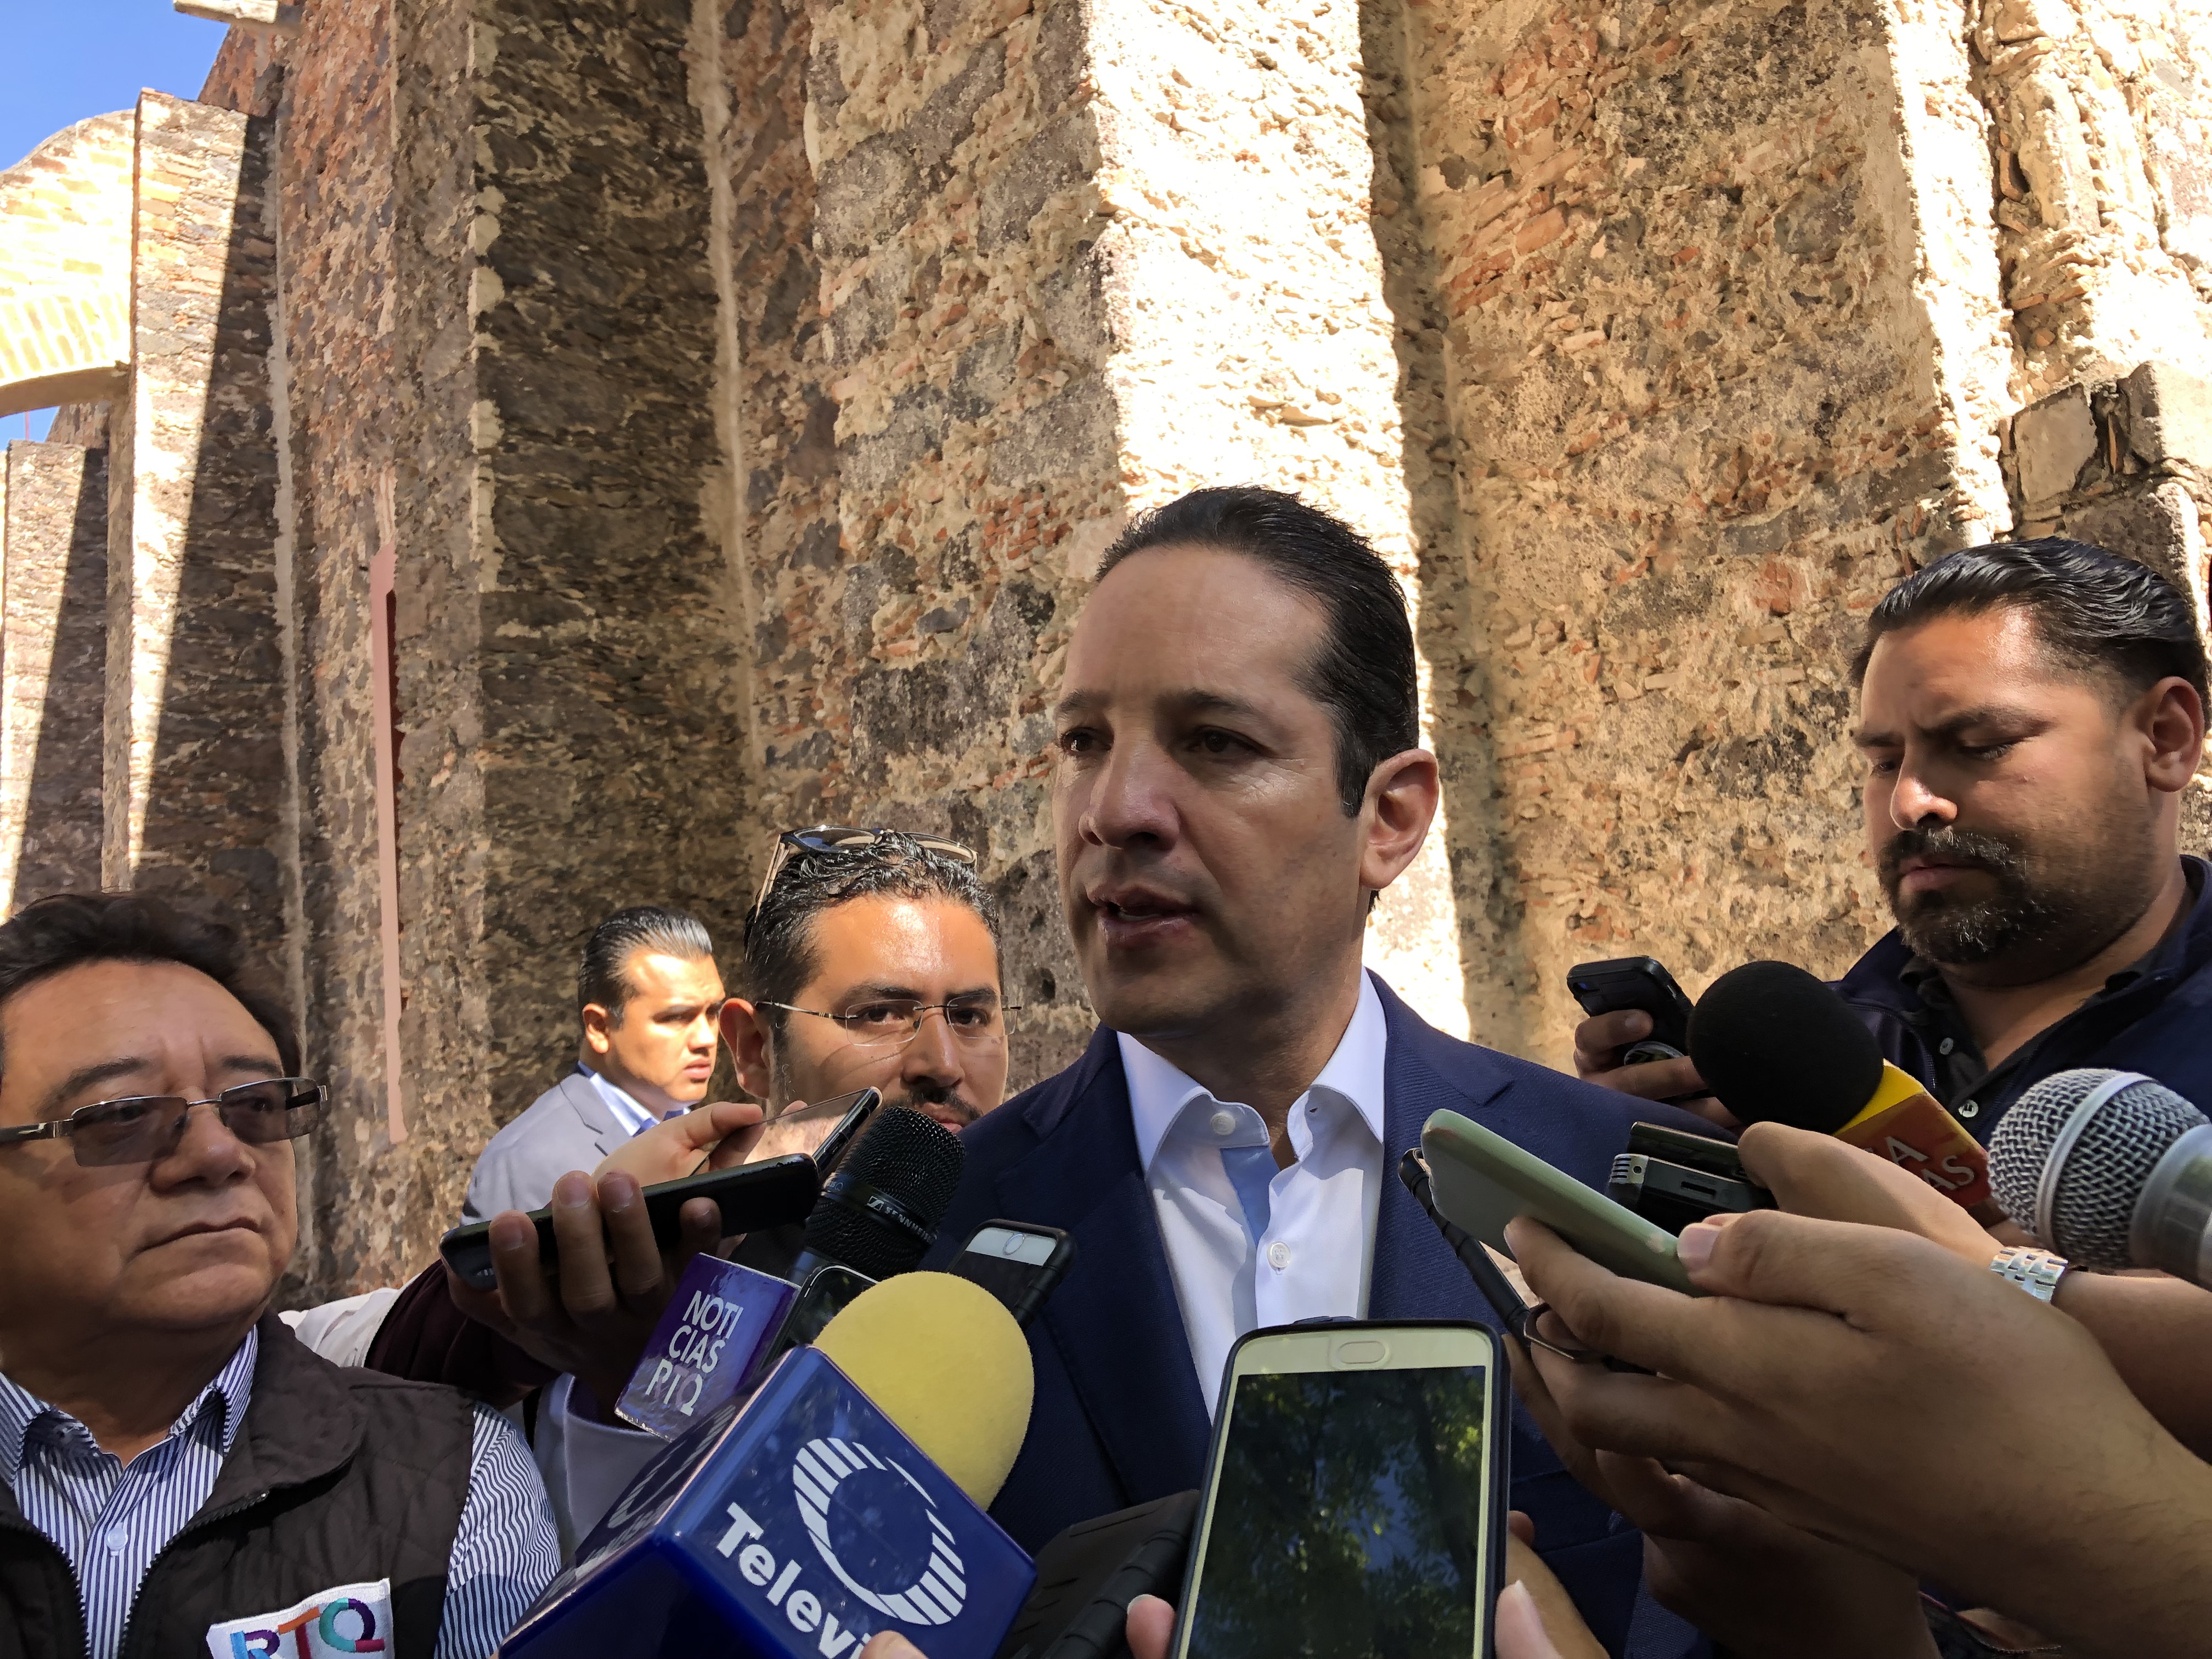  Confirma Pancho Domínguez que presidirá CONAGO